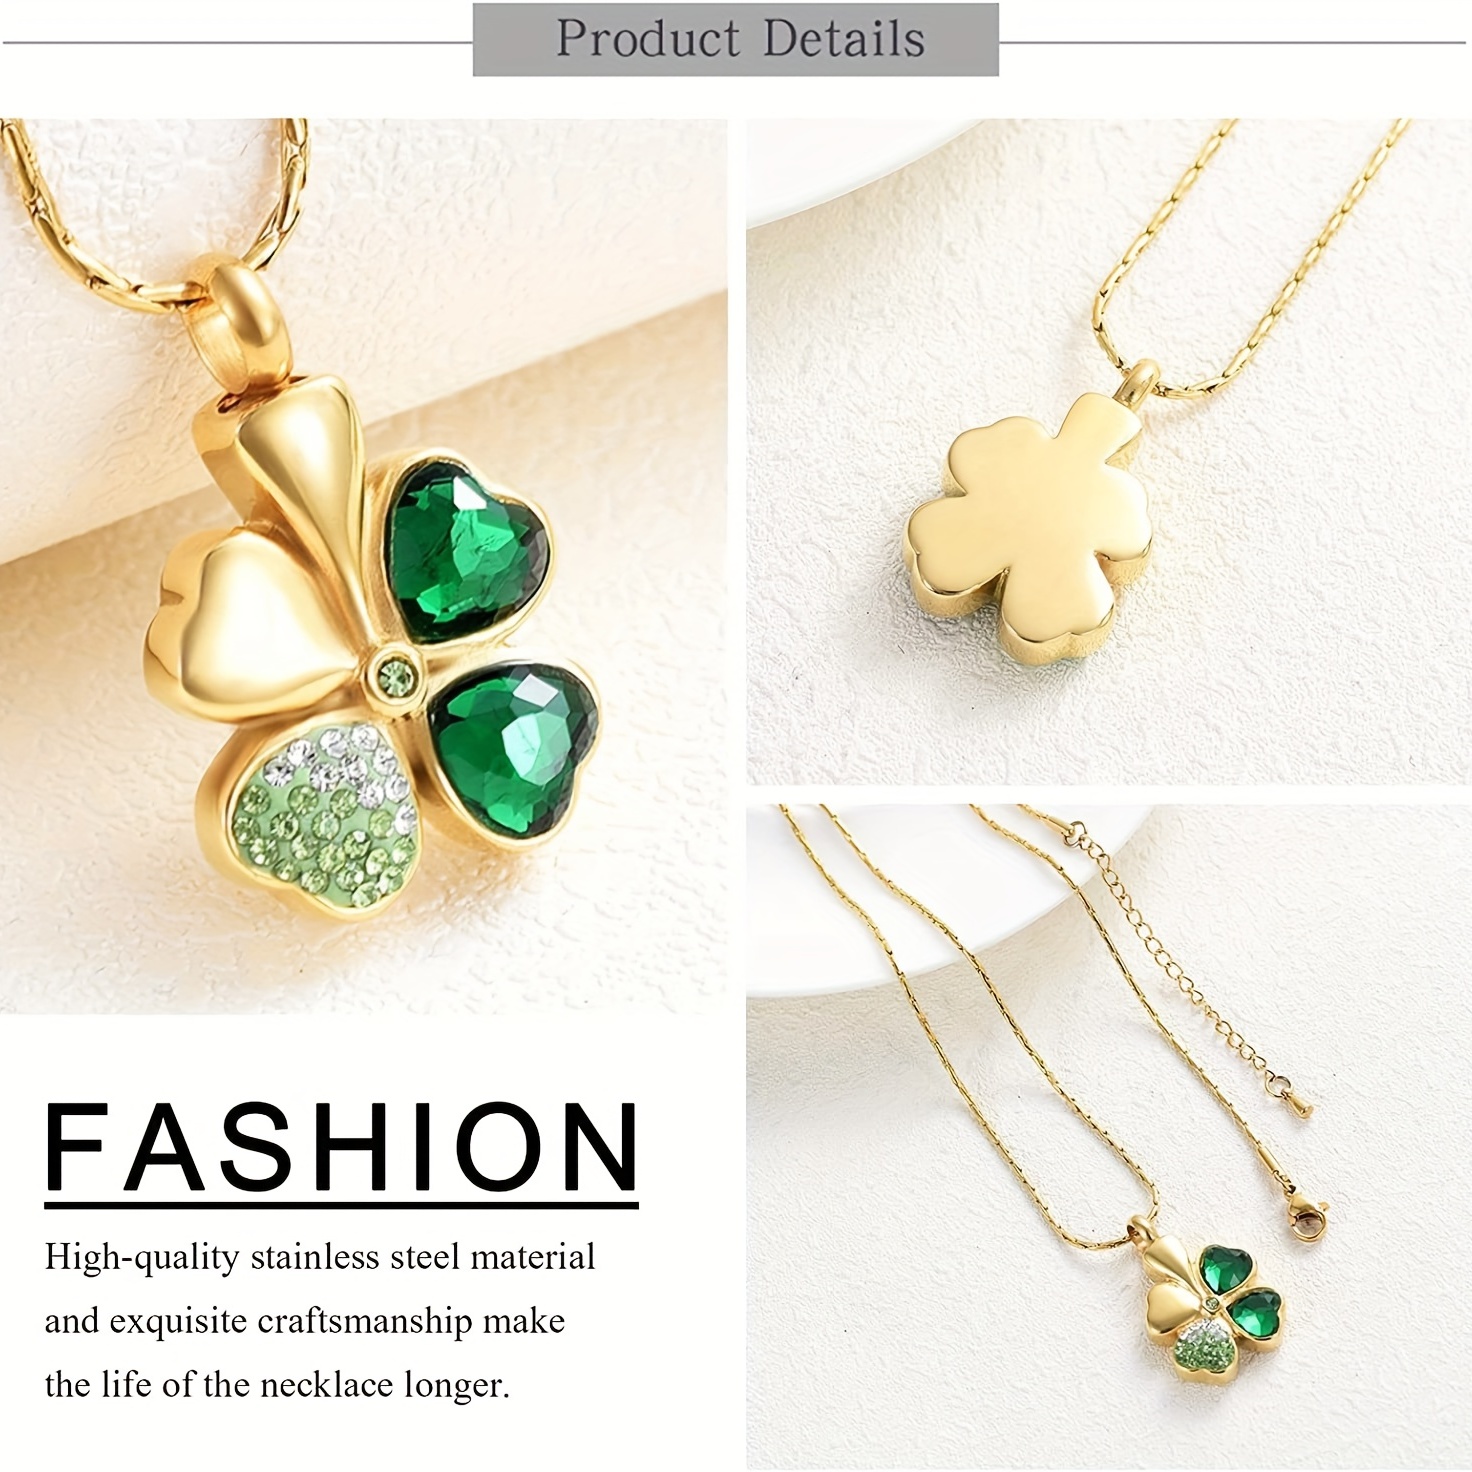 Essentials Gold Four-Leaf Clover Bracelet